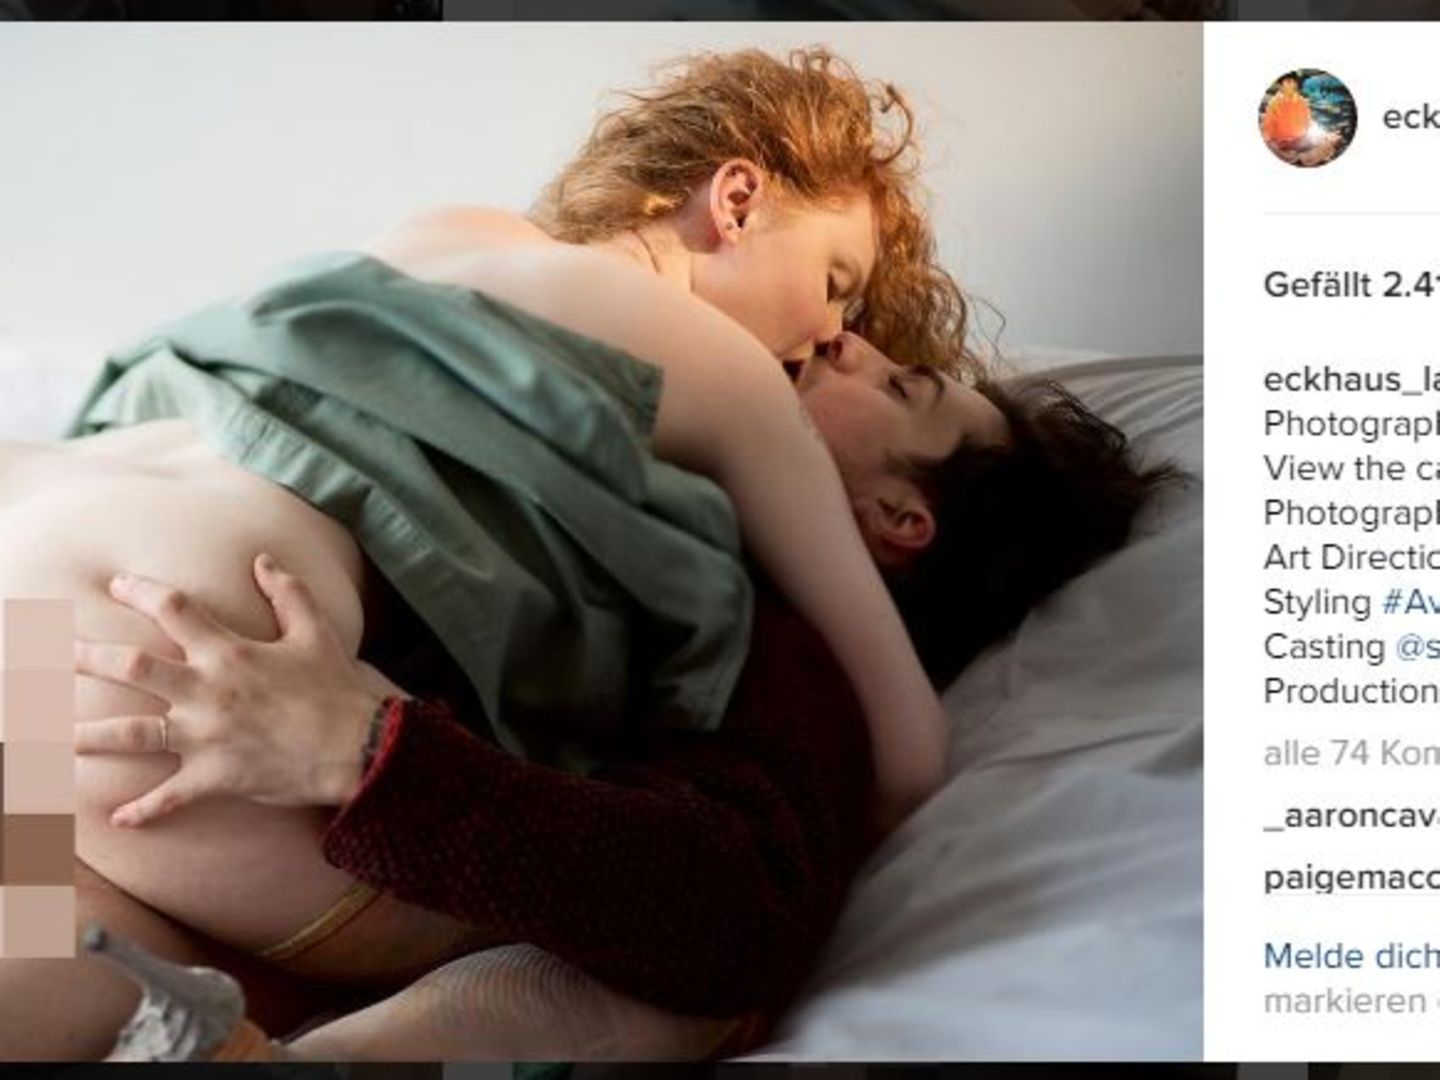 US-Modefirma wirbt mit echten Sex-Bildern STERN.de